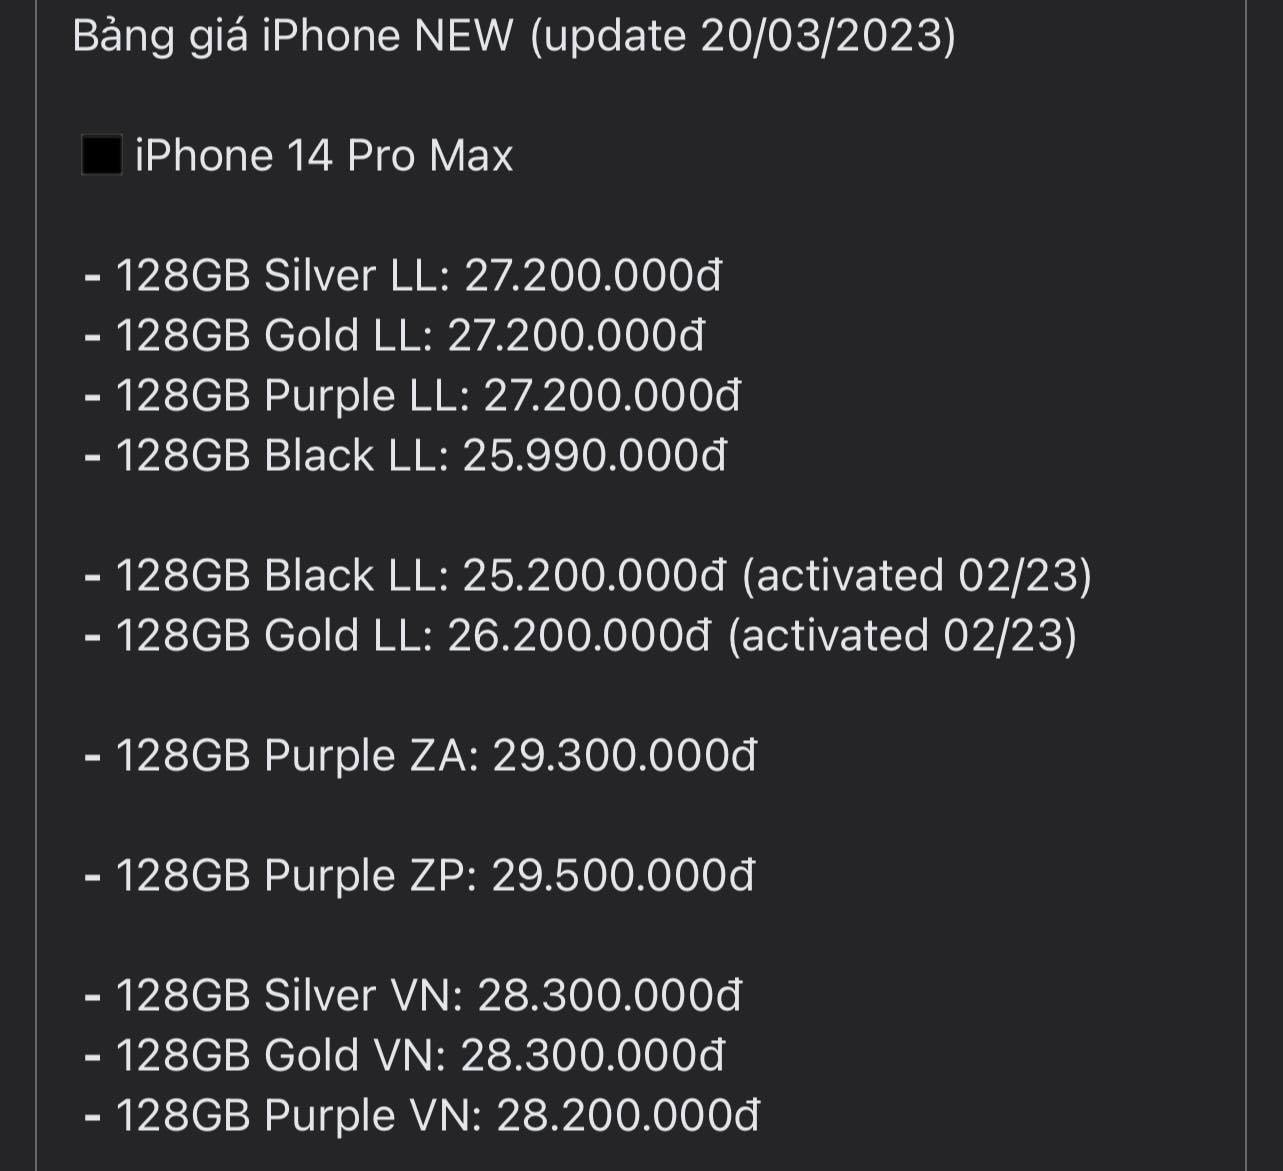 iPhone 14 tại Việt Nam có giá rẻ hơn hàng xách tay Singapore, Thái Lan - Ảnh 2.